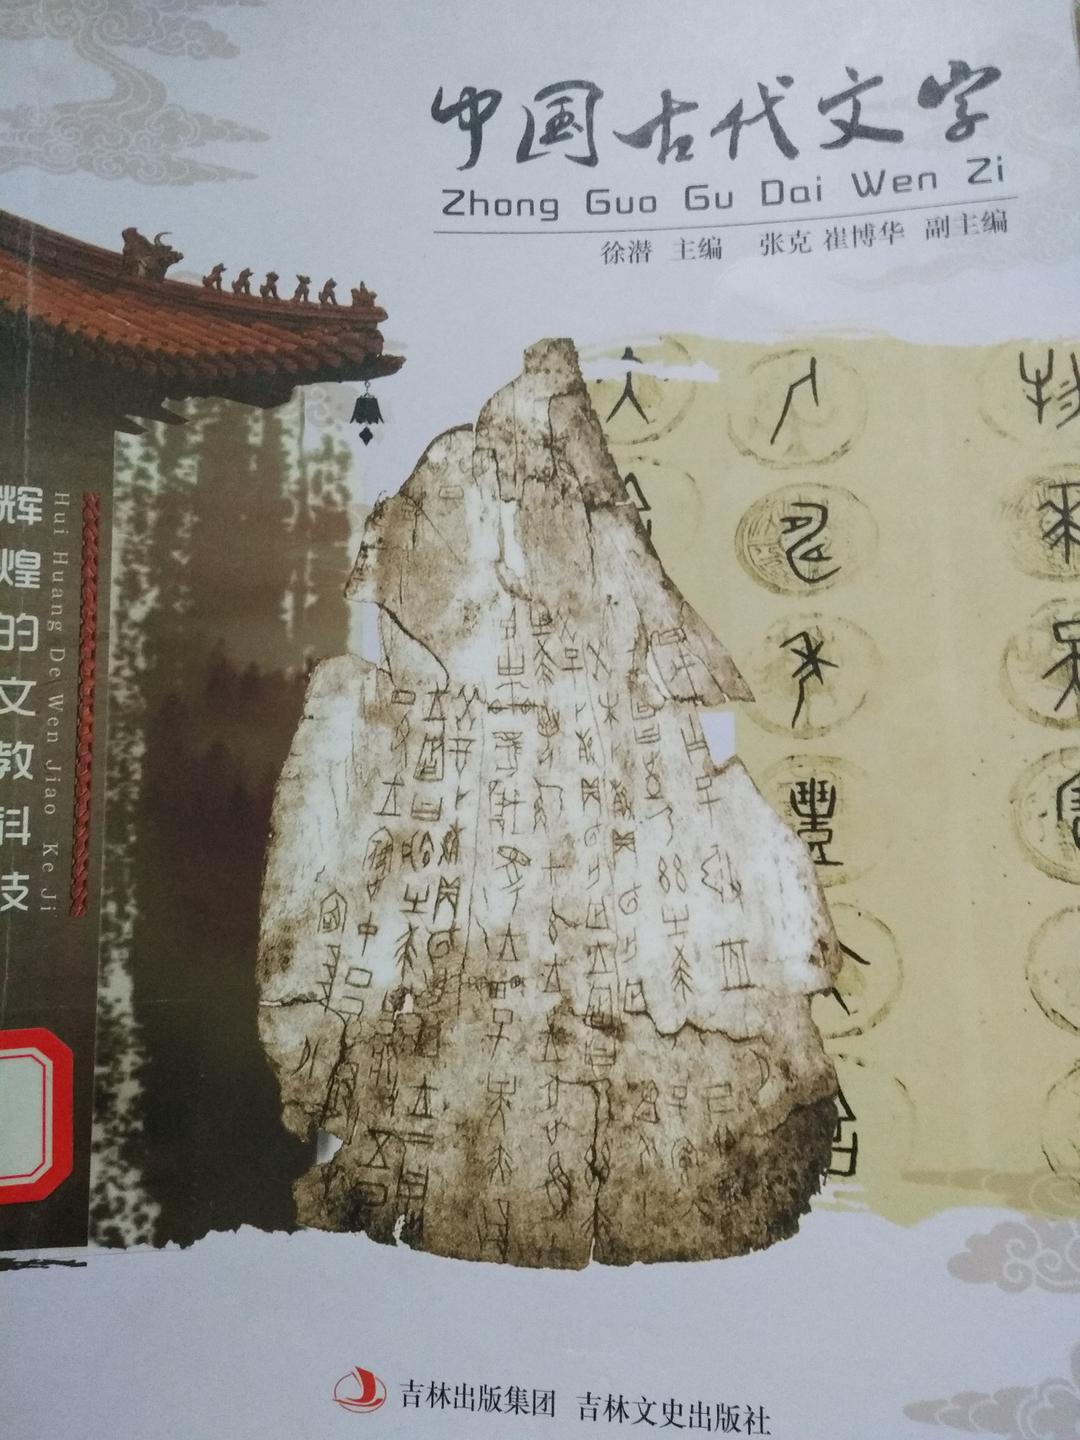 中国古代文字